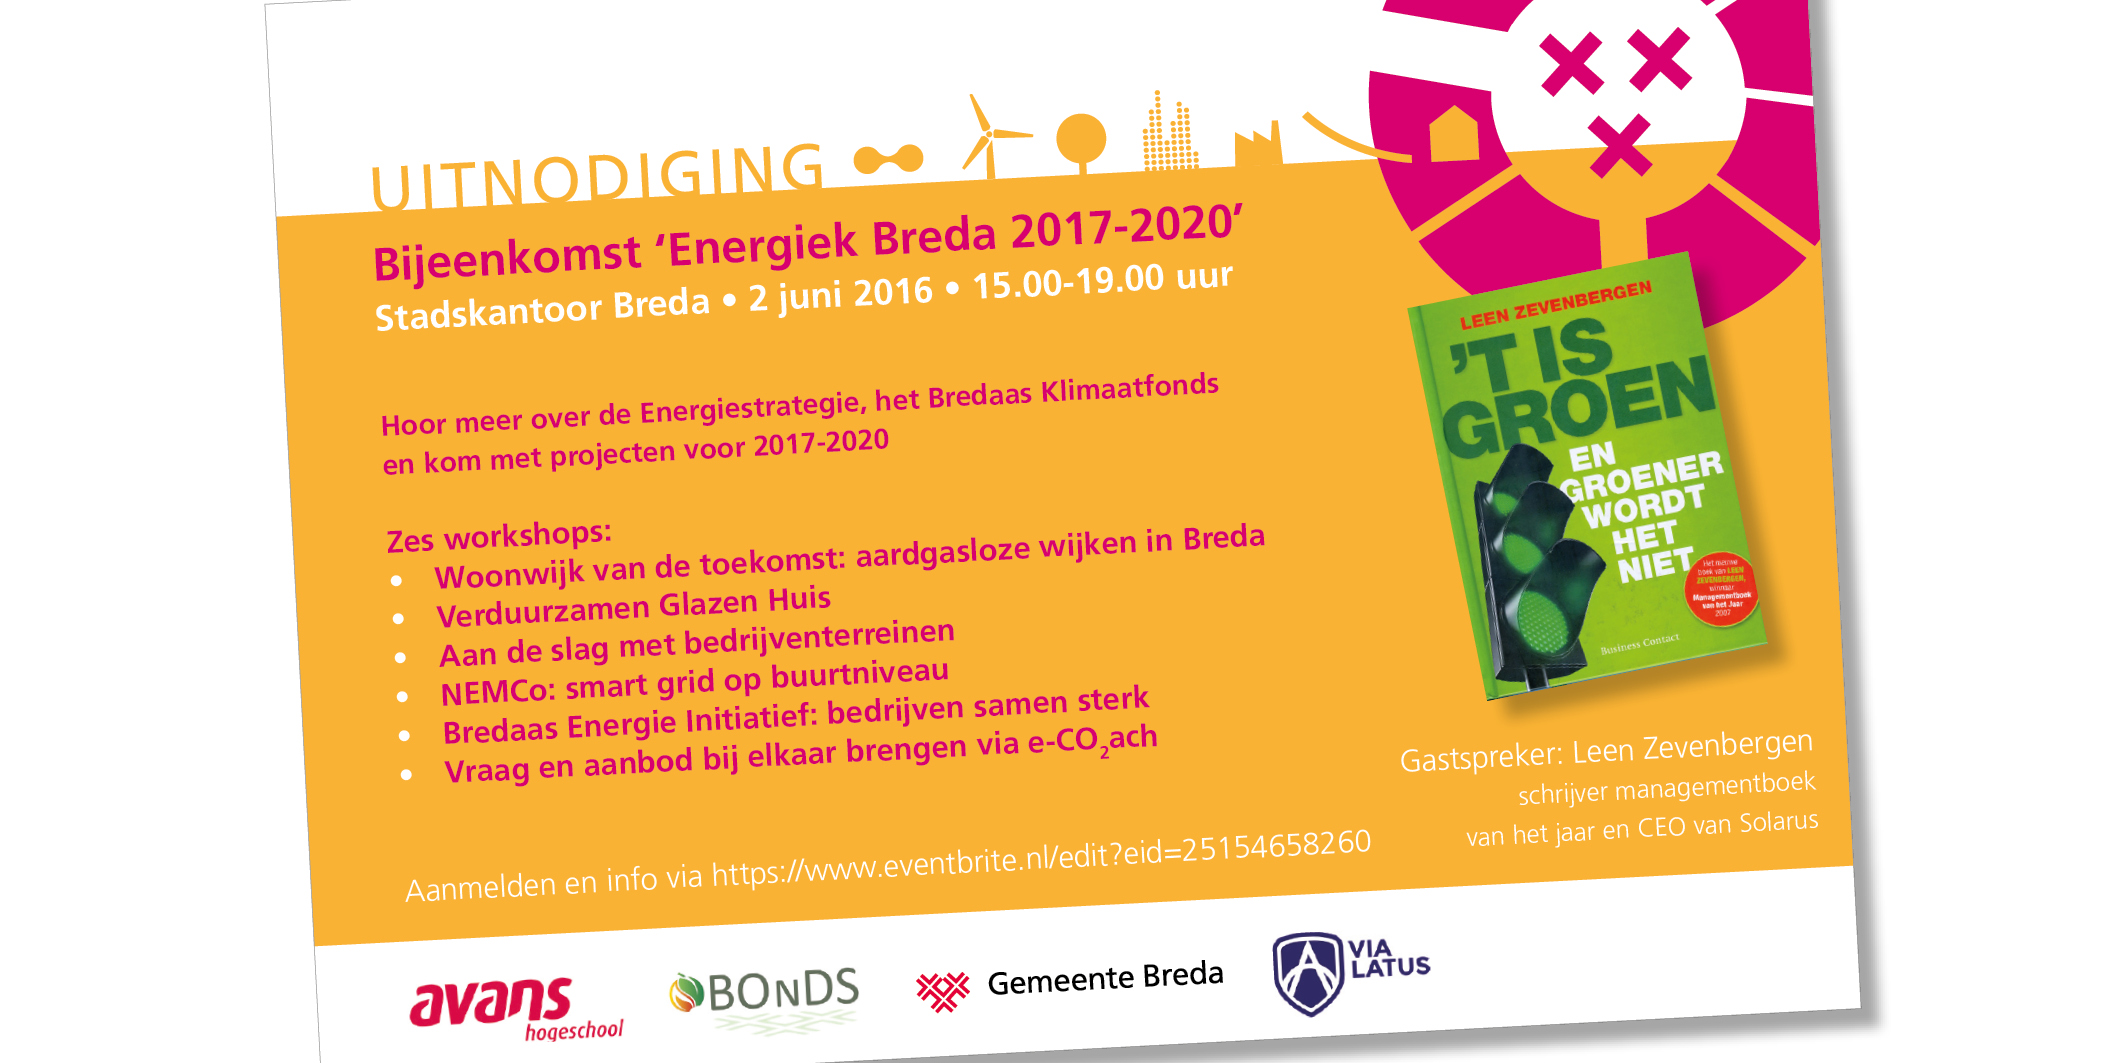 0236_16 Uitnodiging Energiek Breda_Eventbrite en FB los1.jpg